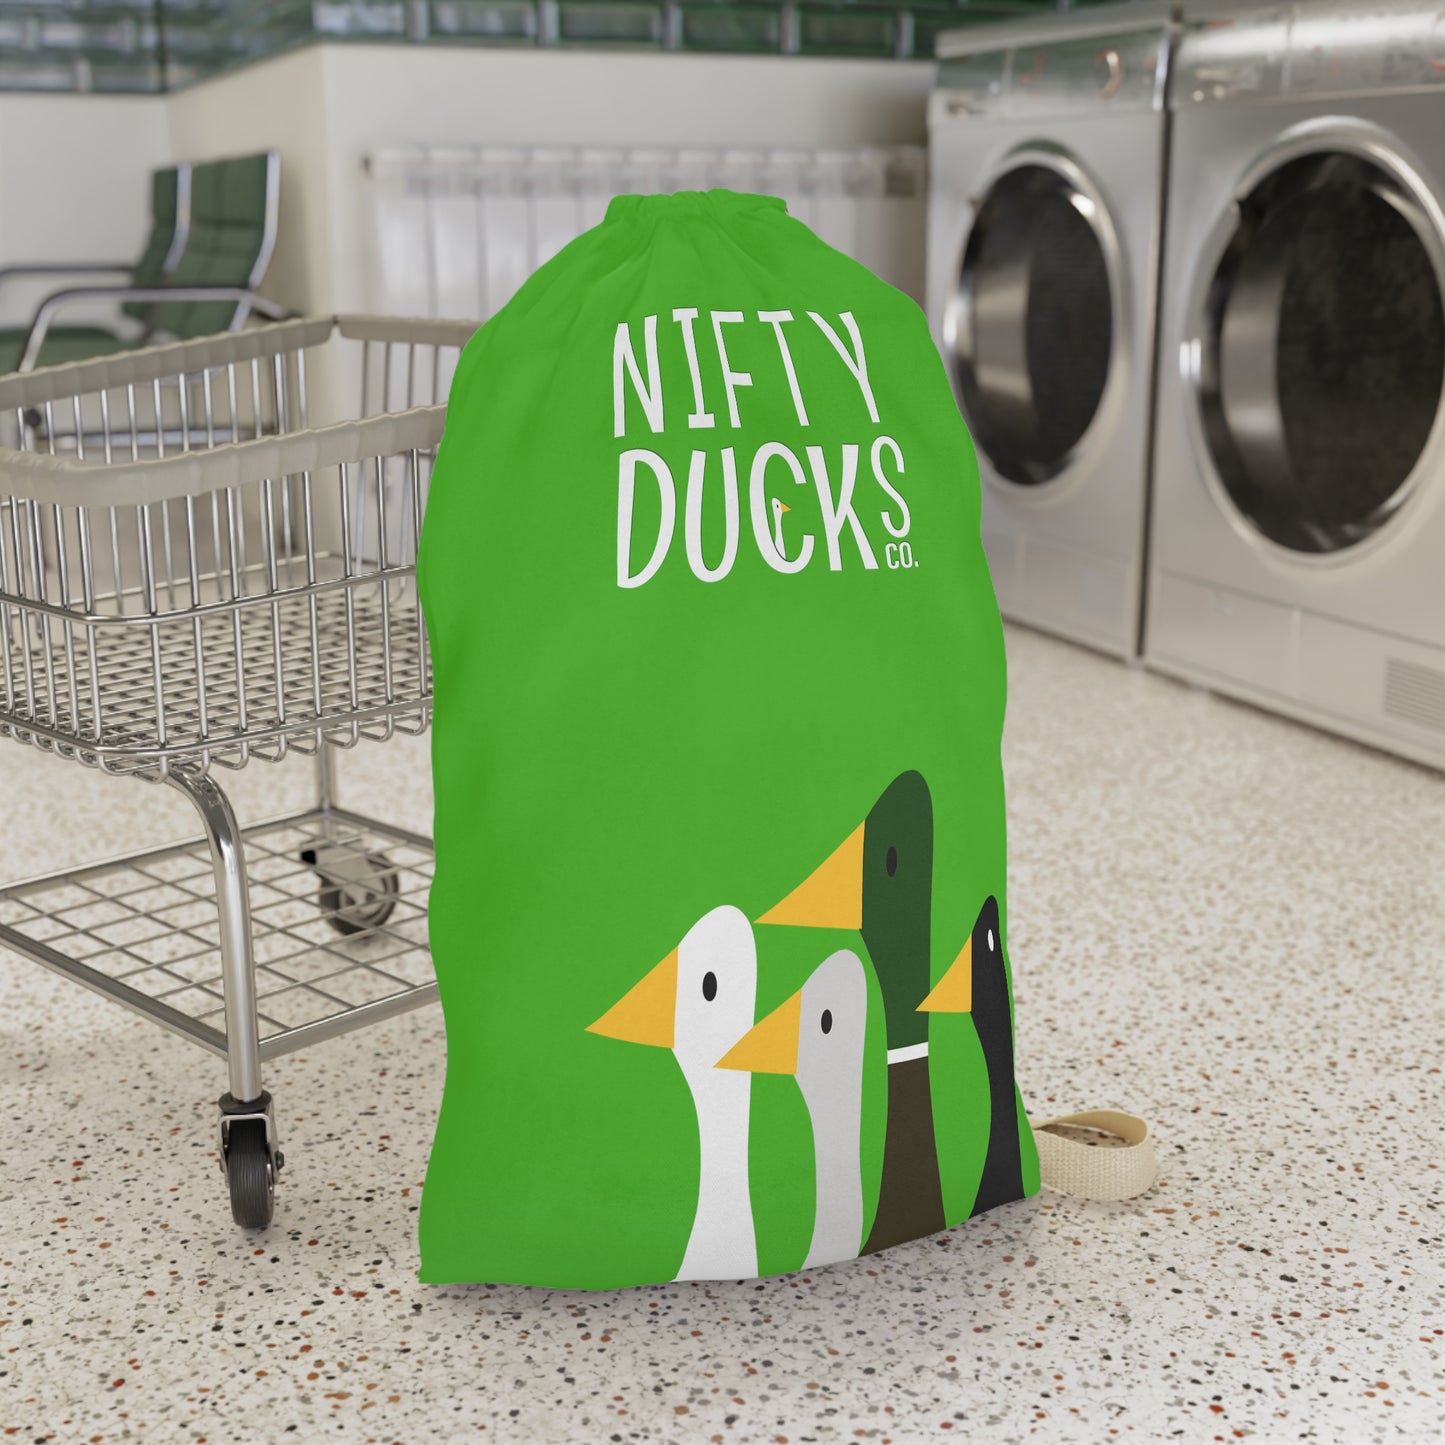 Nifty Ducks Co. Logo2 - Kelly Green 4cbb17 - Laundry Bag